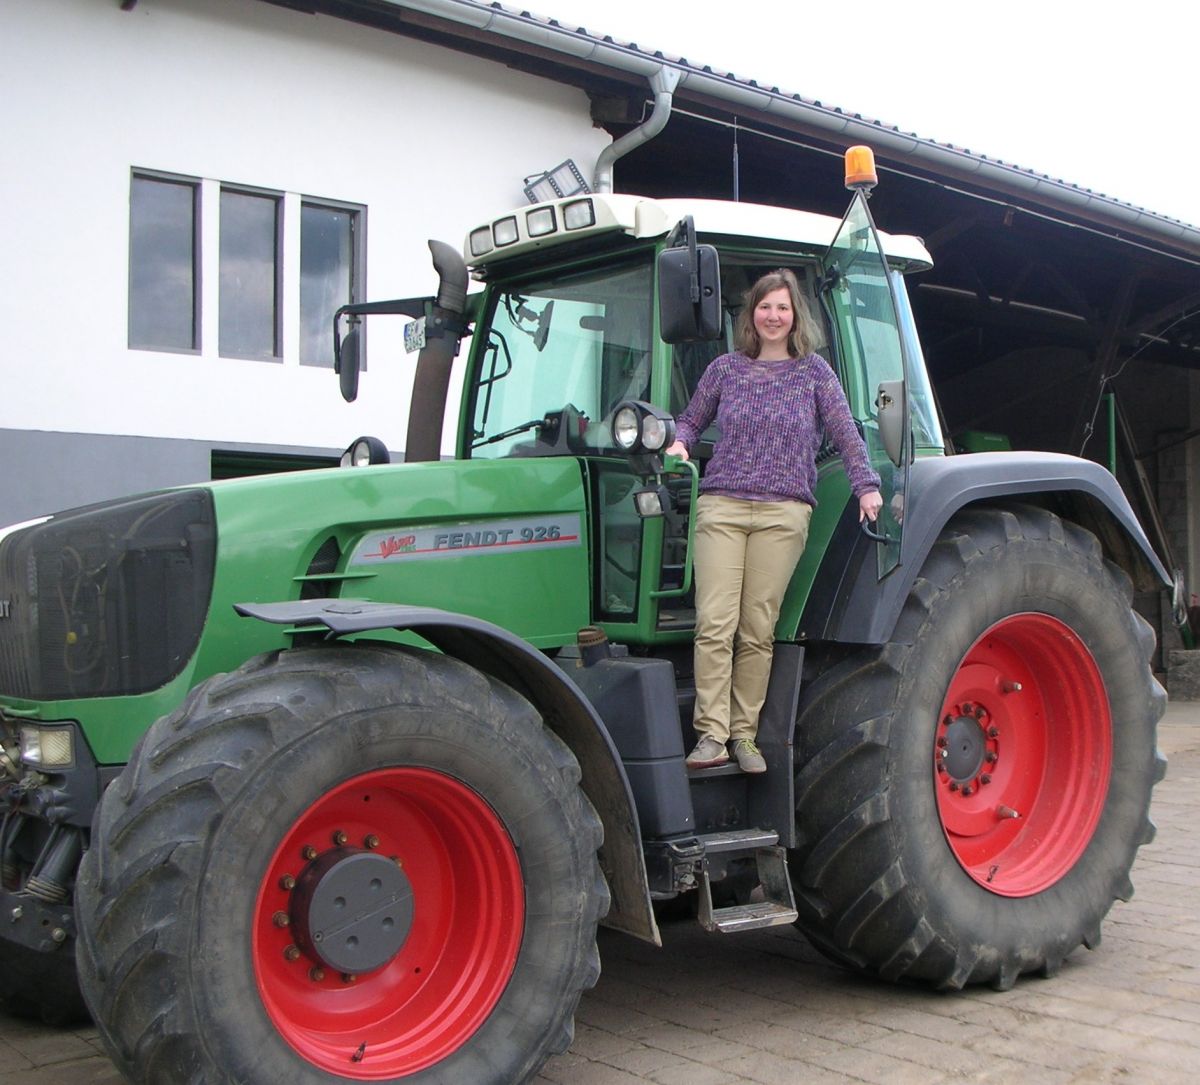 Ulrike Beukert ist auf einem Bauernhof  aufgewachsen und bringt auch ihre landwirtschaftlichen Kenntnisse in ihre Forschung ein.
